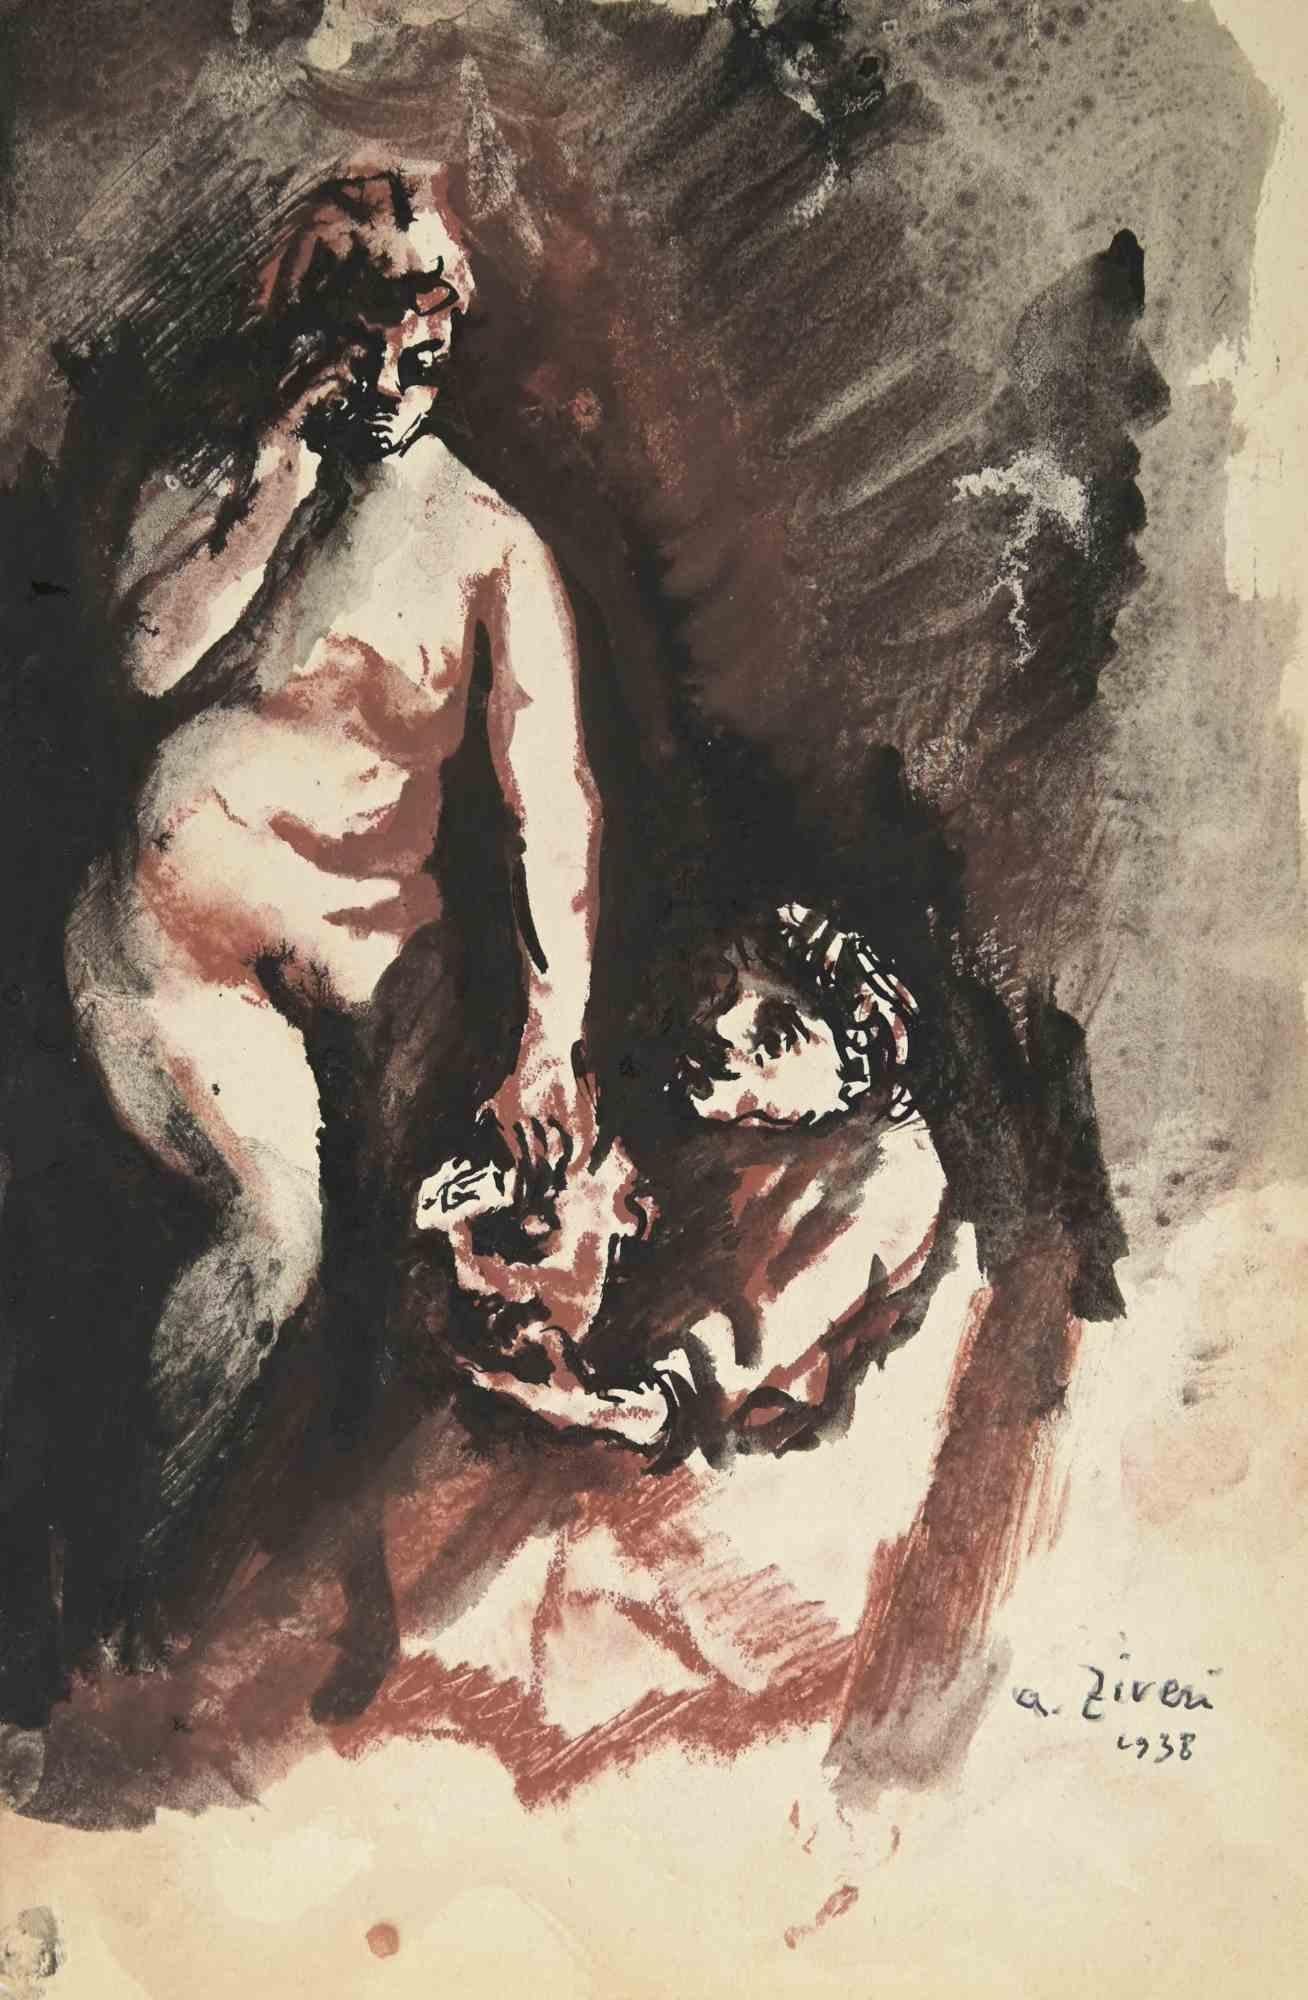 Das Liebespaar ist eine Zeichnung von Alberto Ziveri aus dem Jahr 1938.

Aquarell auf Papier.

Handsigniert und datiert.

In gutem Zustand.

Das Kunstwerk wird durch geschickte Striche meisterhaft dargestellt.

Alberto Ziveri (Rom, 1908 - 1990), der